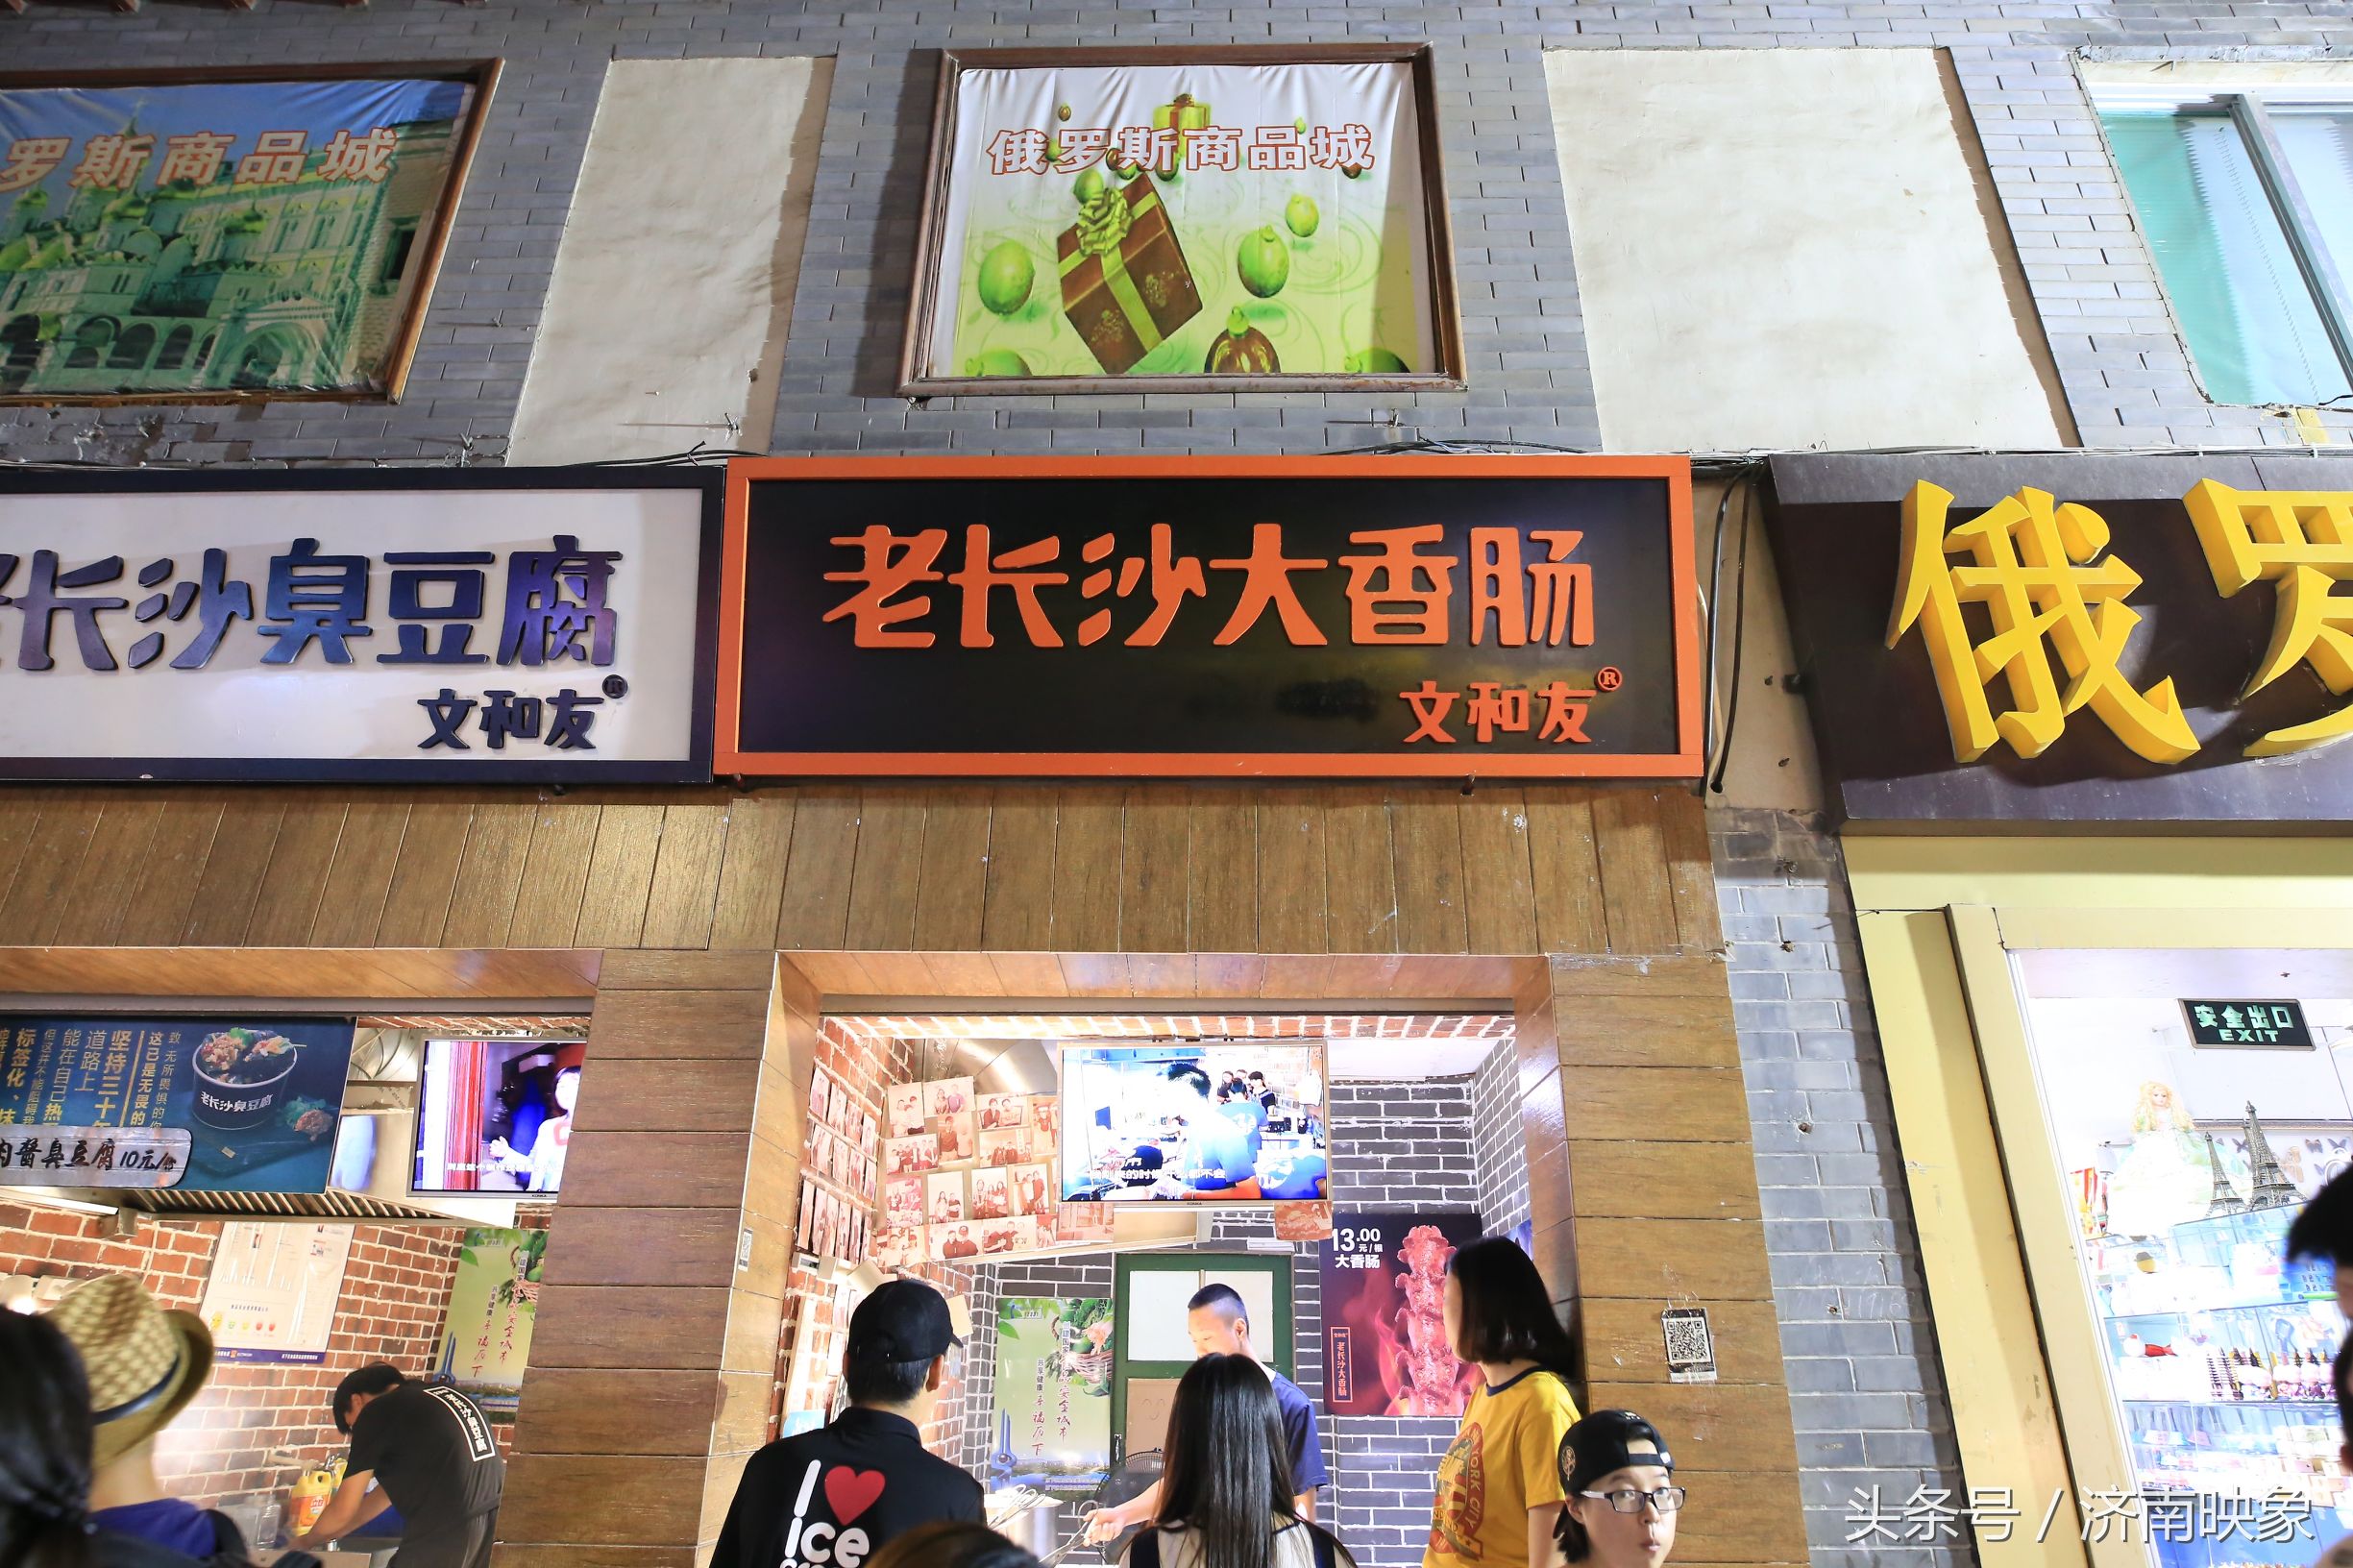 大鱿鱼、叫花鸡、臭豆腐、烤生蚝，这是现在芙蓉街的“四大名吃”么？